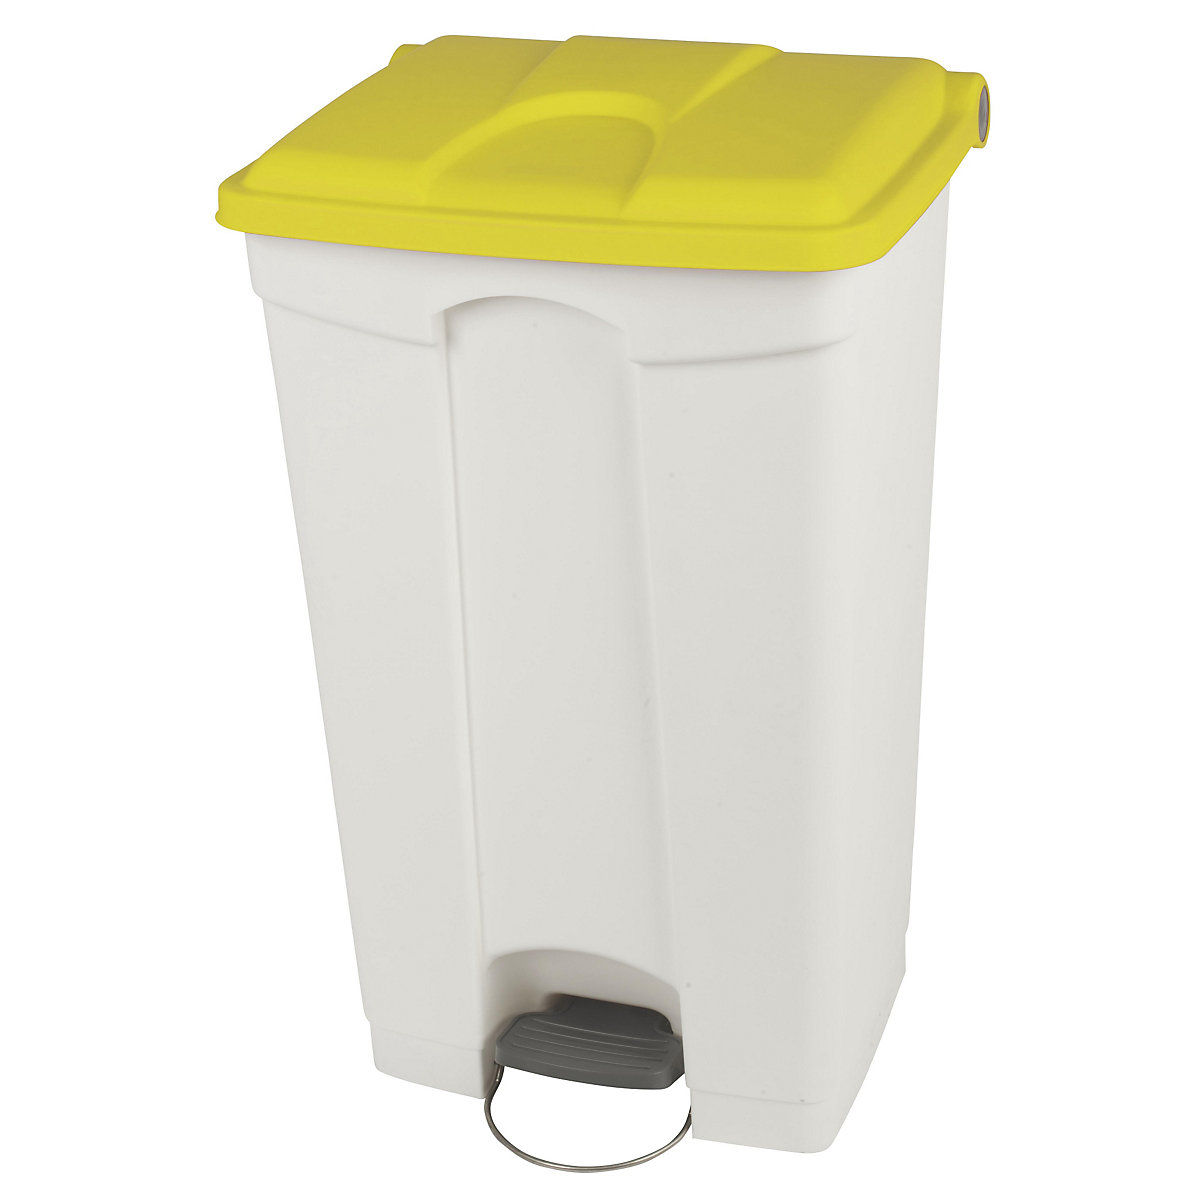 Nádoba na odpad s pedálem, objem 90 l, š x v x h 505 x 790 x 410 mm, bílá, žluté víko-15